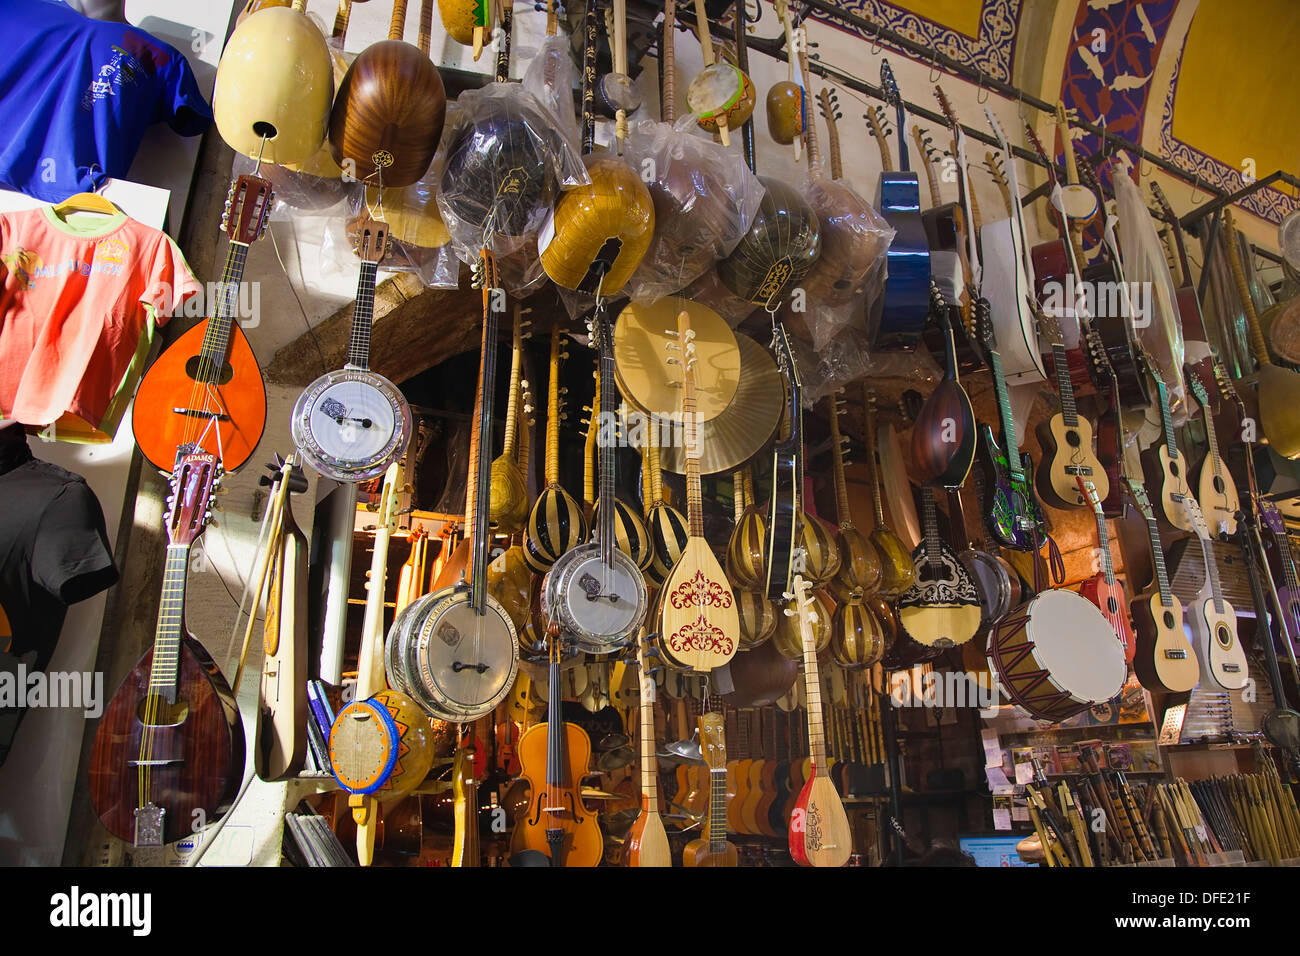 Turchia, Istanbul, Fatih, Sultanahmet, Kapalicarsi, musica in stallo la visualizzazione di vari strumenti musicali nel Grand Bazaar. Foto Stock